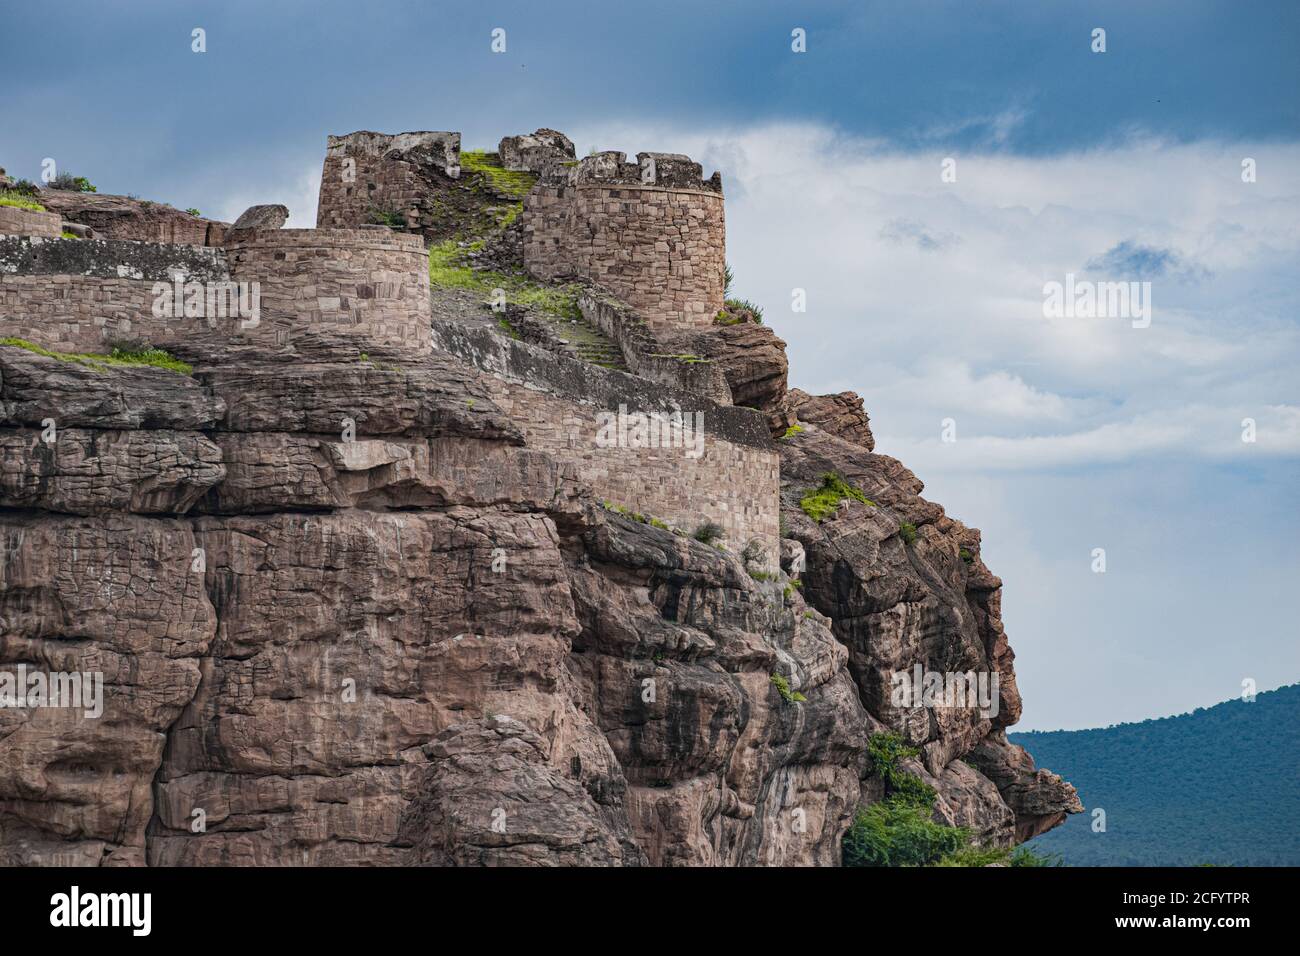 una hermosa fortaleza construida en la cima de la colina por tippu sulthan en badami. Foto de stock